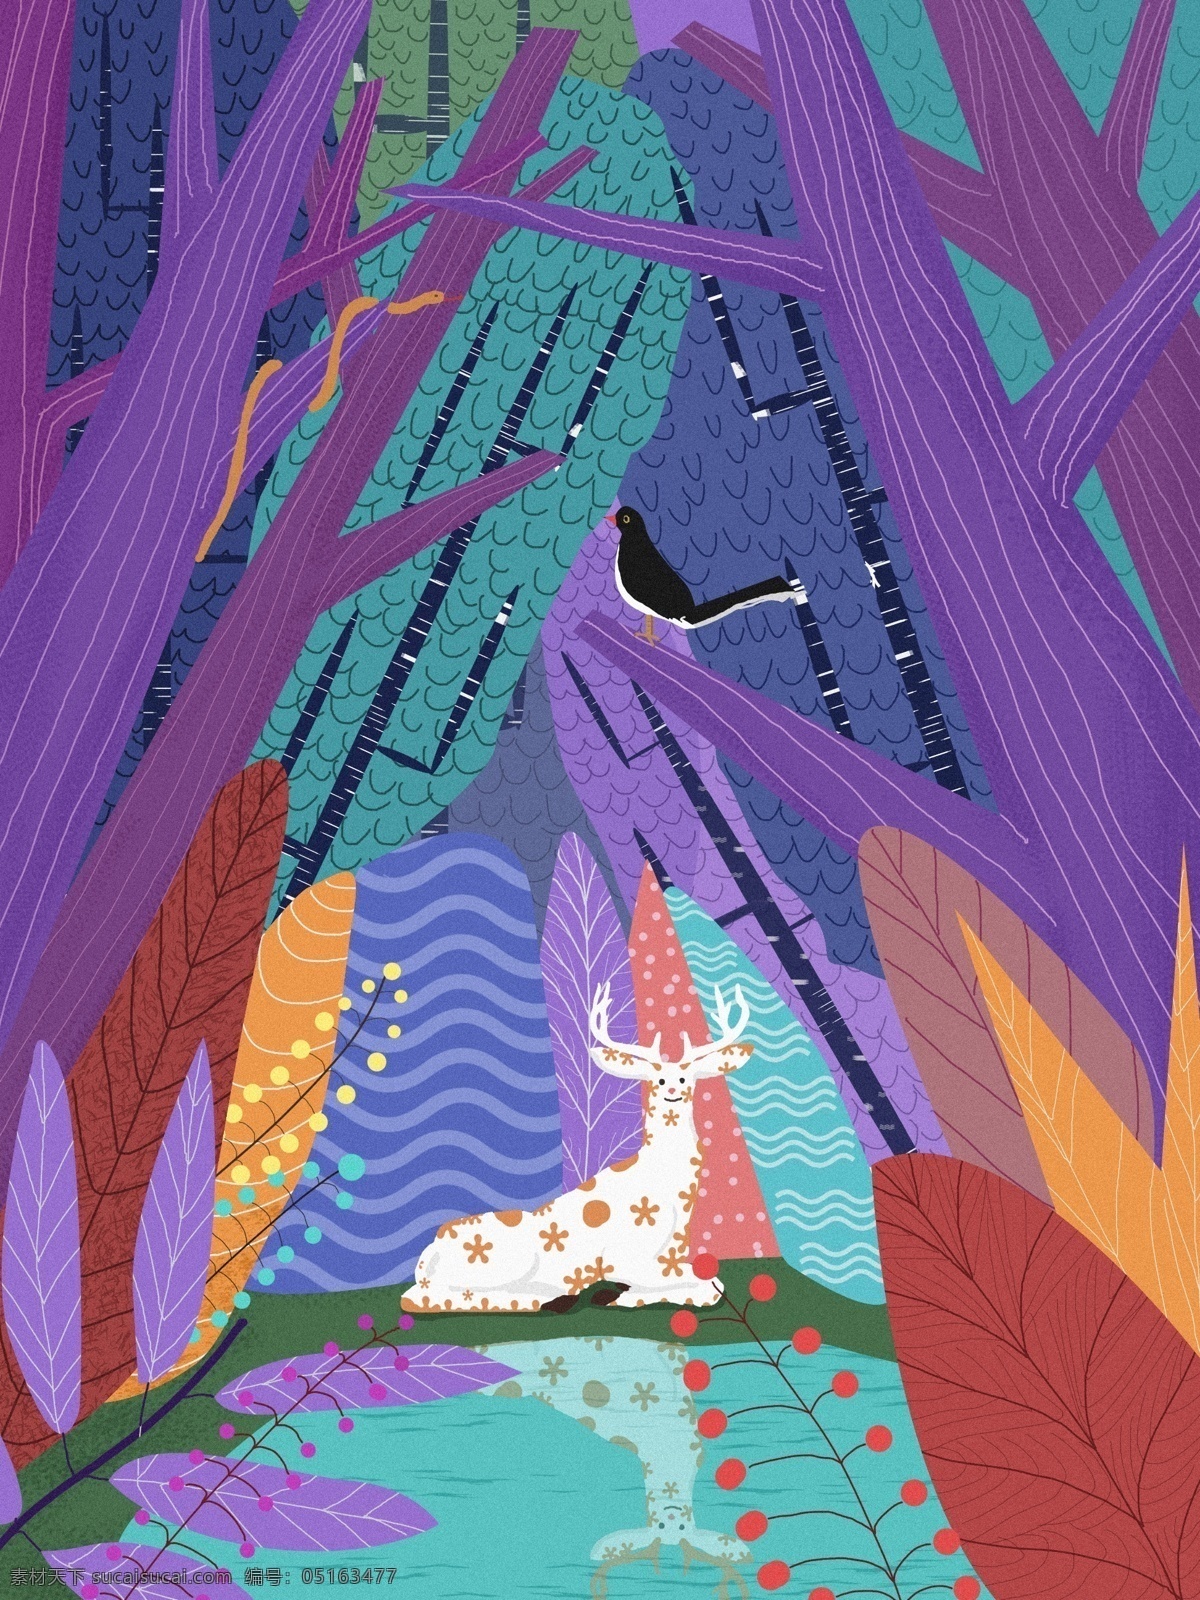 林 深 时见 鹿 治愈 系 原创 插画 树林 倒影 色彩 鸟 树干 林深 见鹿 蛇 湖泊 配图